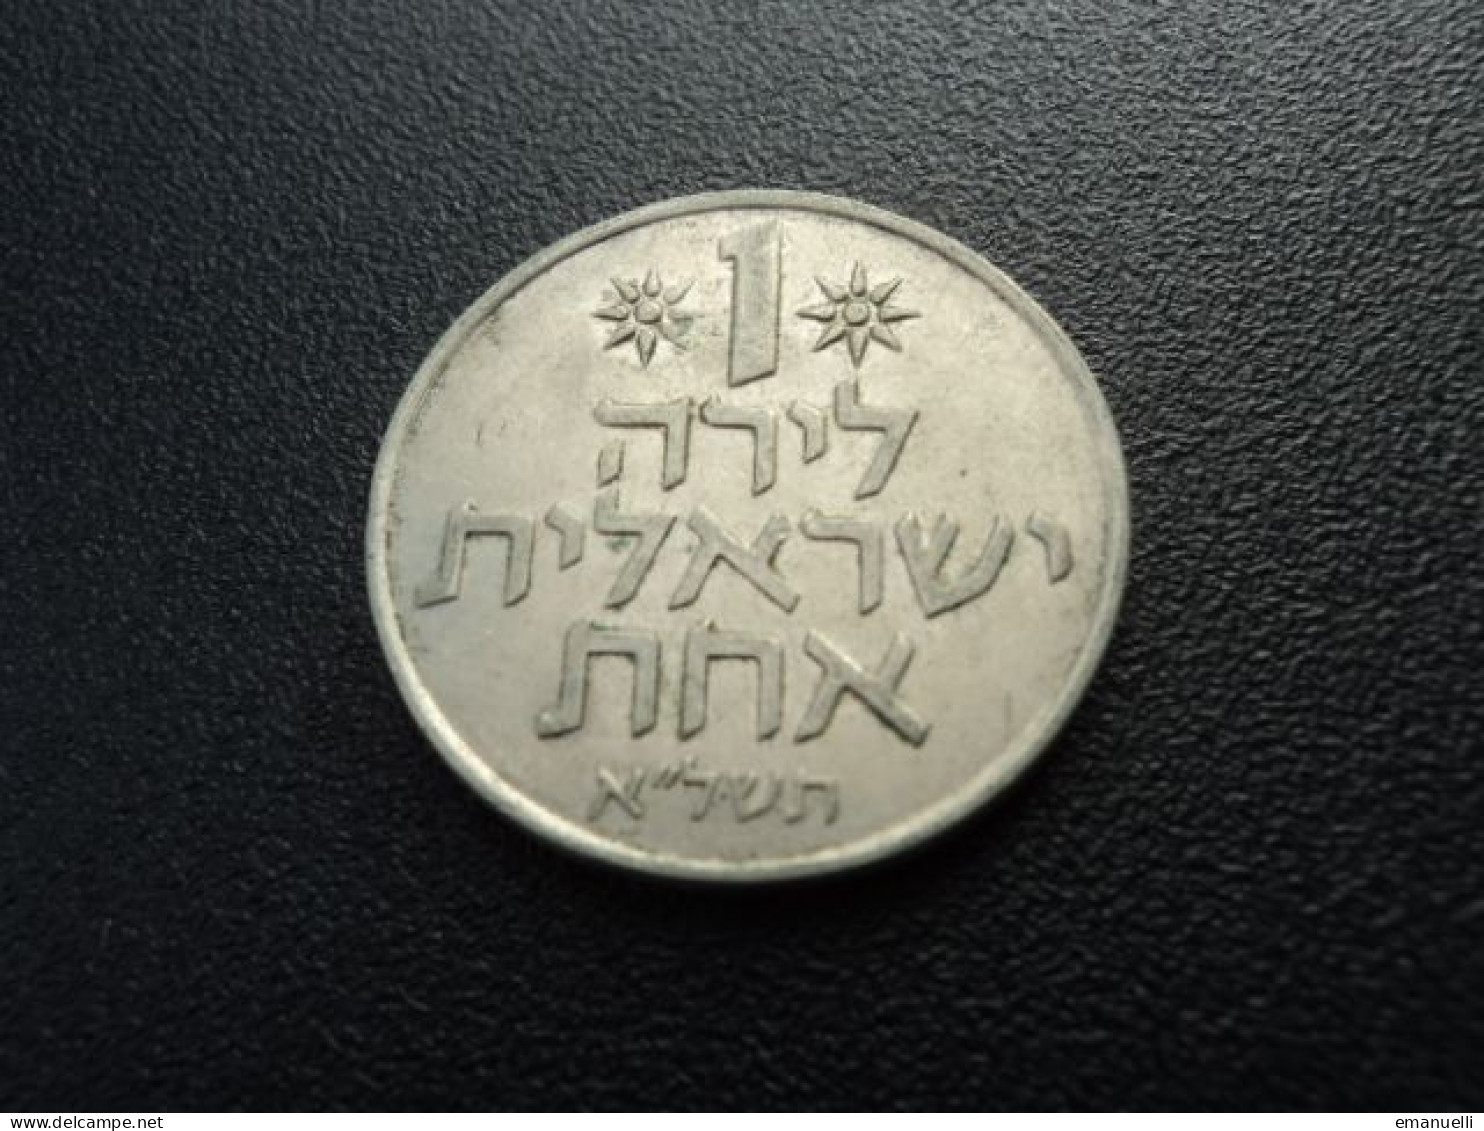 ISRAËL : 1 LIRA  5731 (1971)   KM 47.1    SUP - Israel